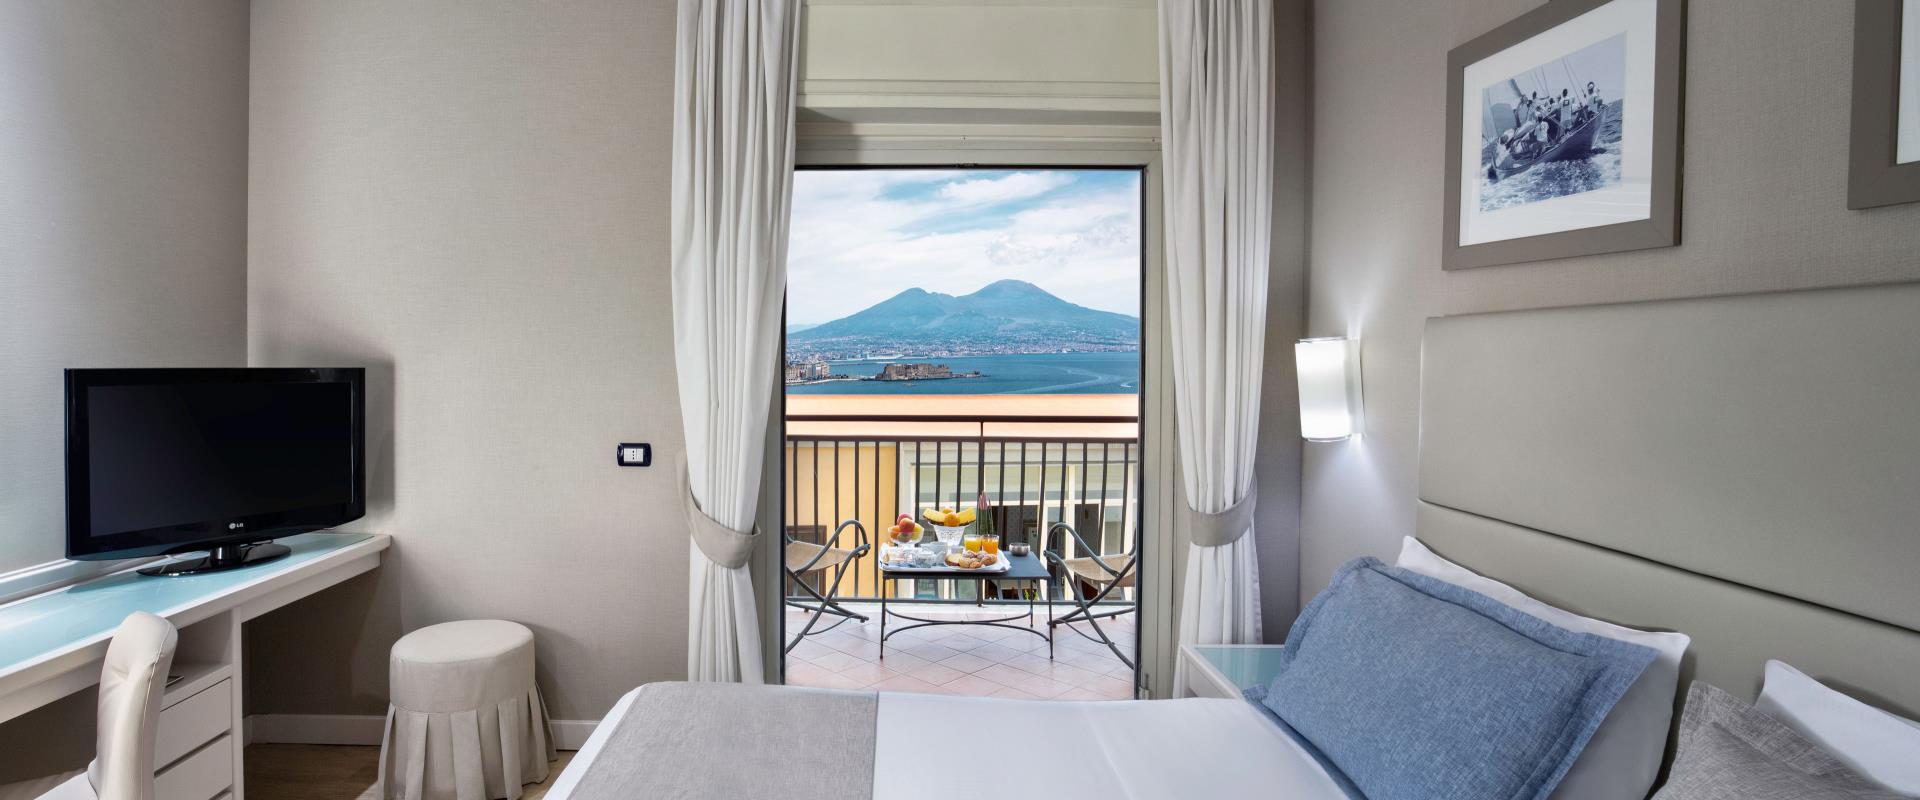 Entdecken Sie die Zimmer mit teilweisem Meerblick im Hotel Paradiso in Neapel!